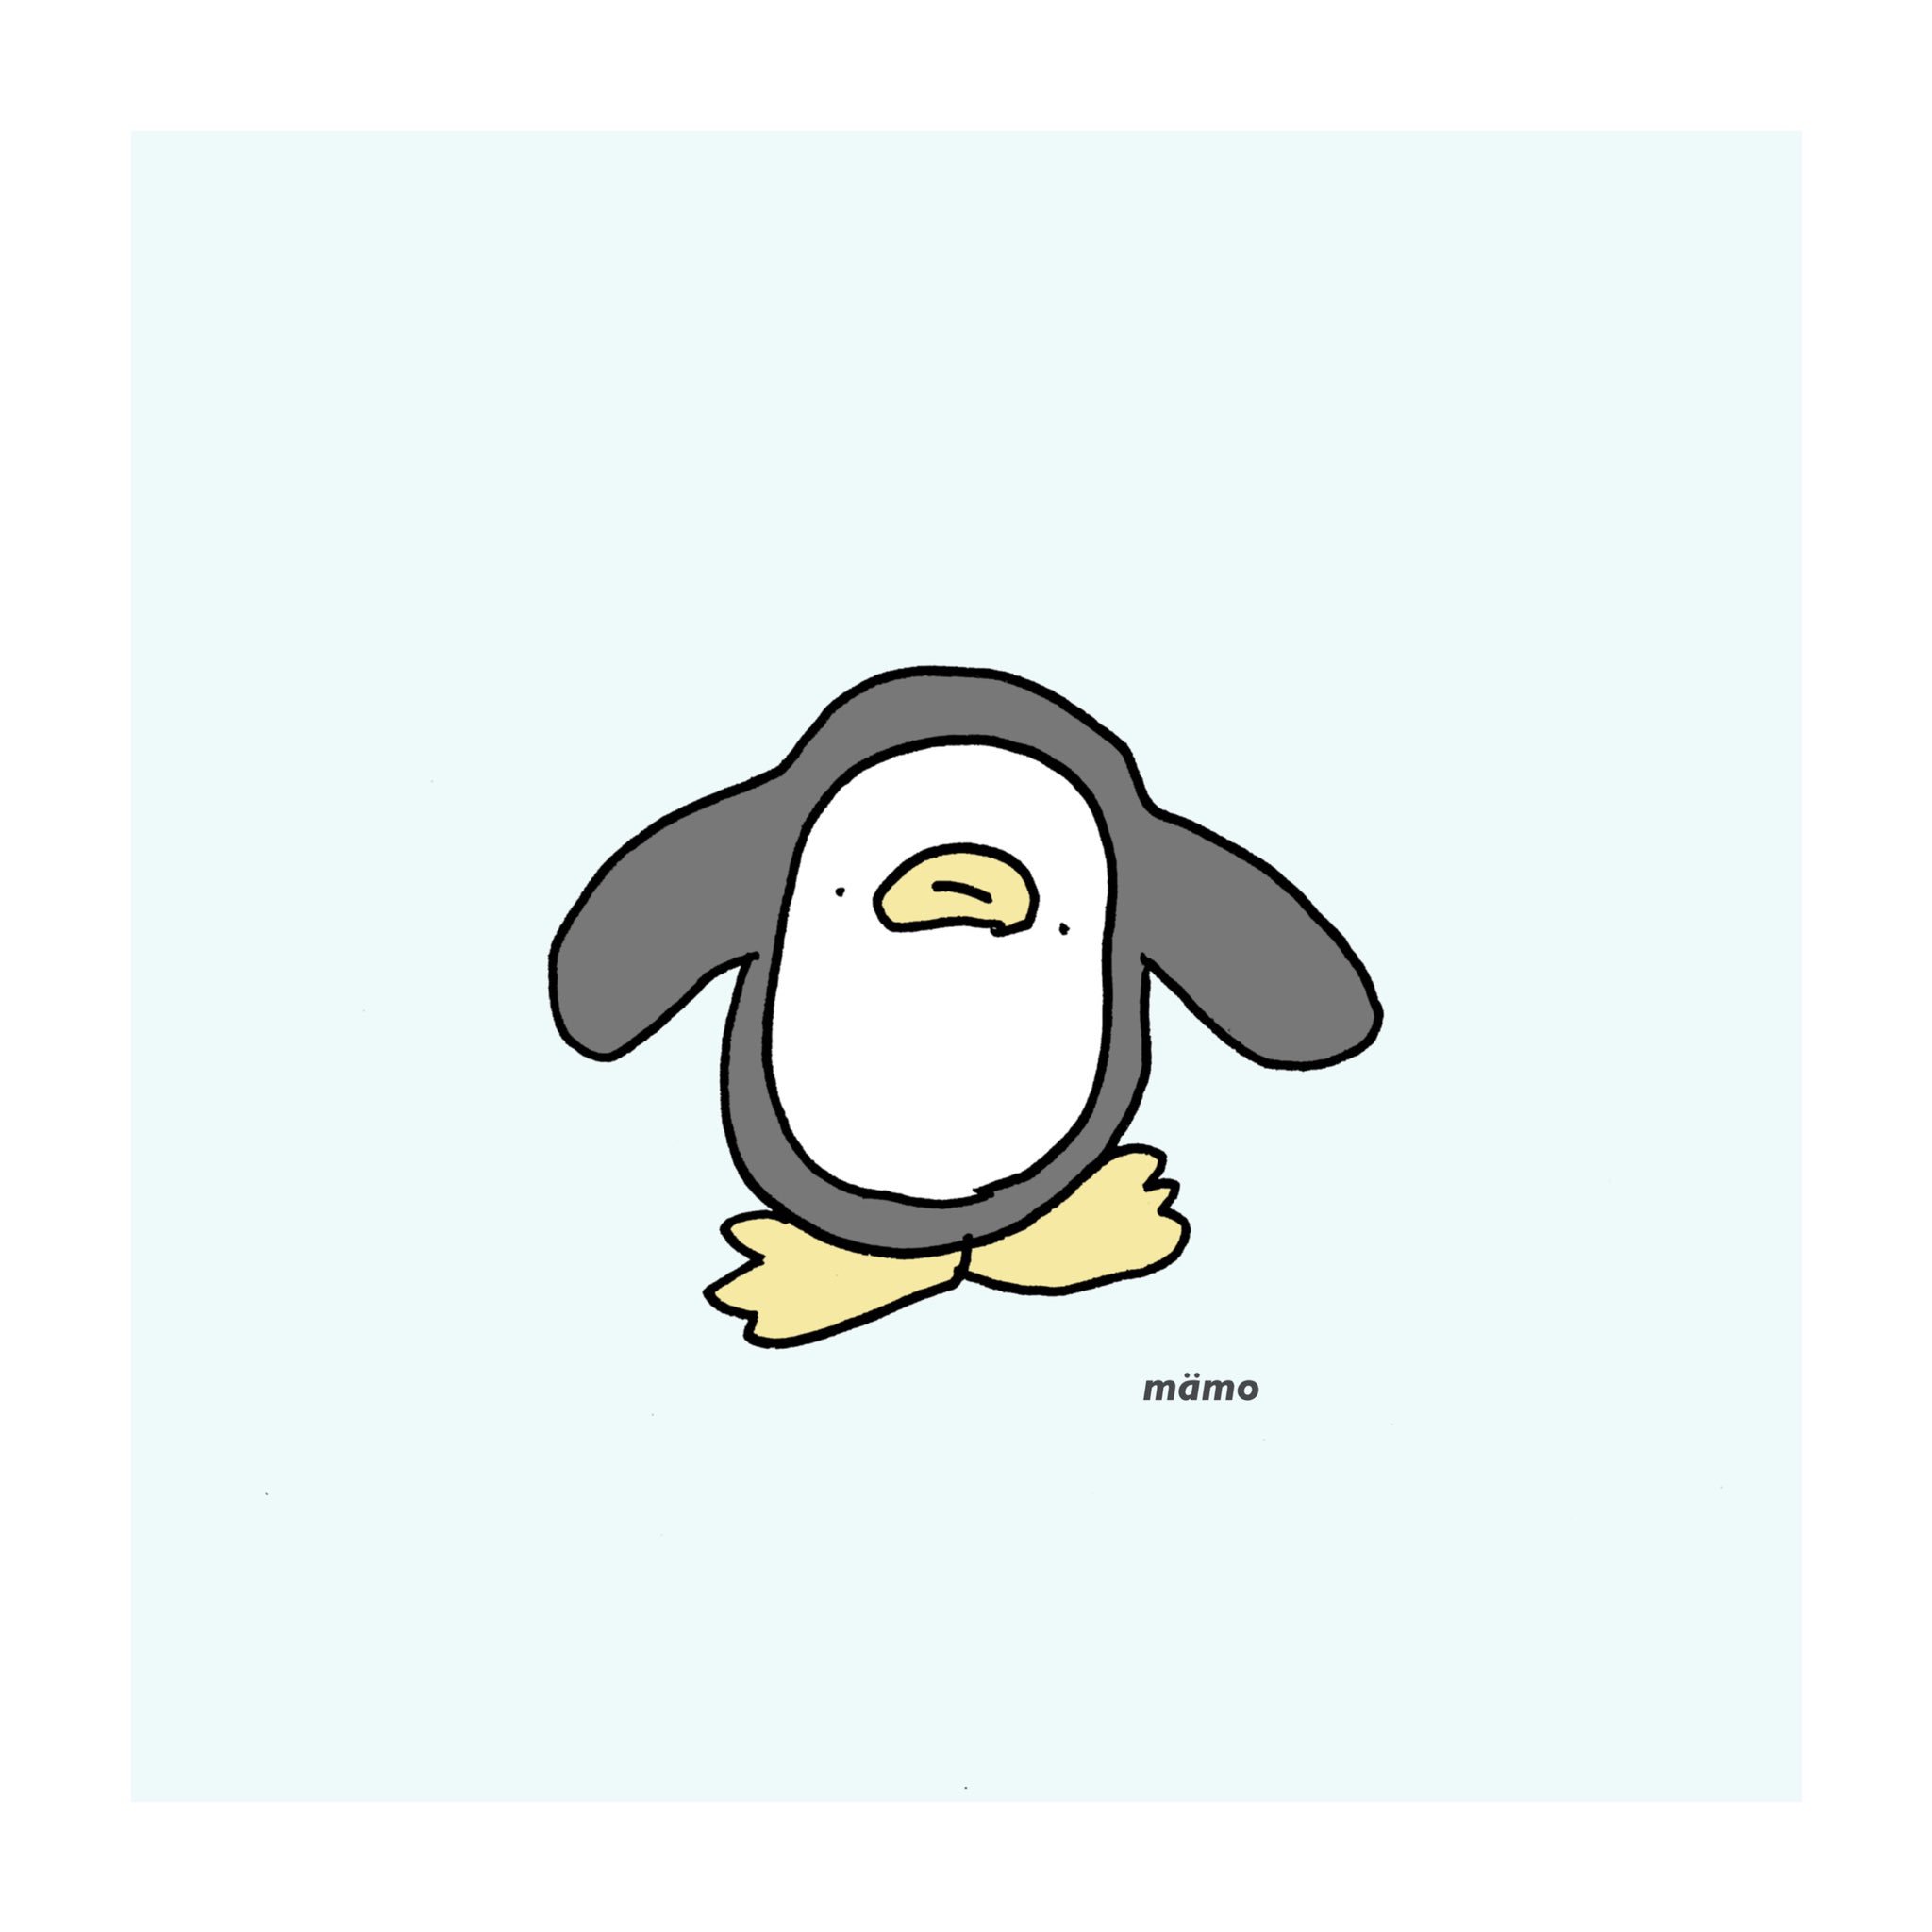 Mamo V Twitter ゆるいペンギン くそゆるいペンギン イラスト シュール 絵描きさんと繋がりたい T Co Z47m1tcnsv Twitter